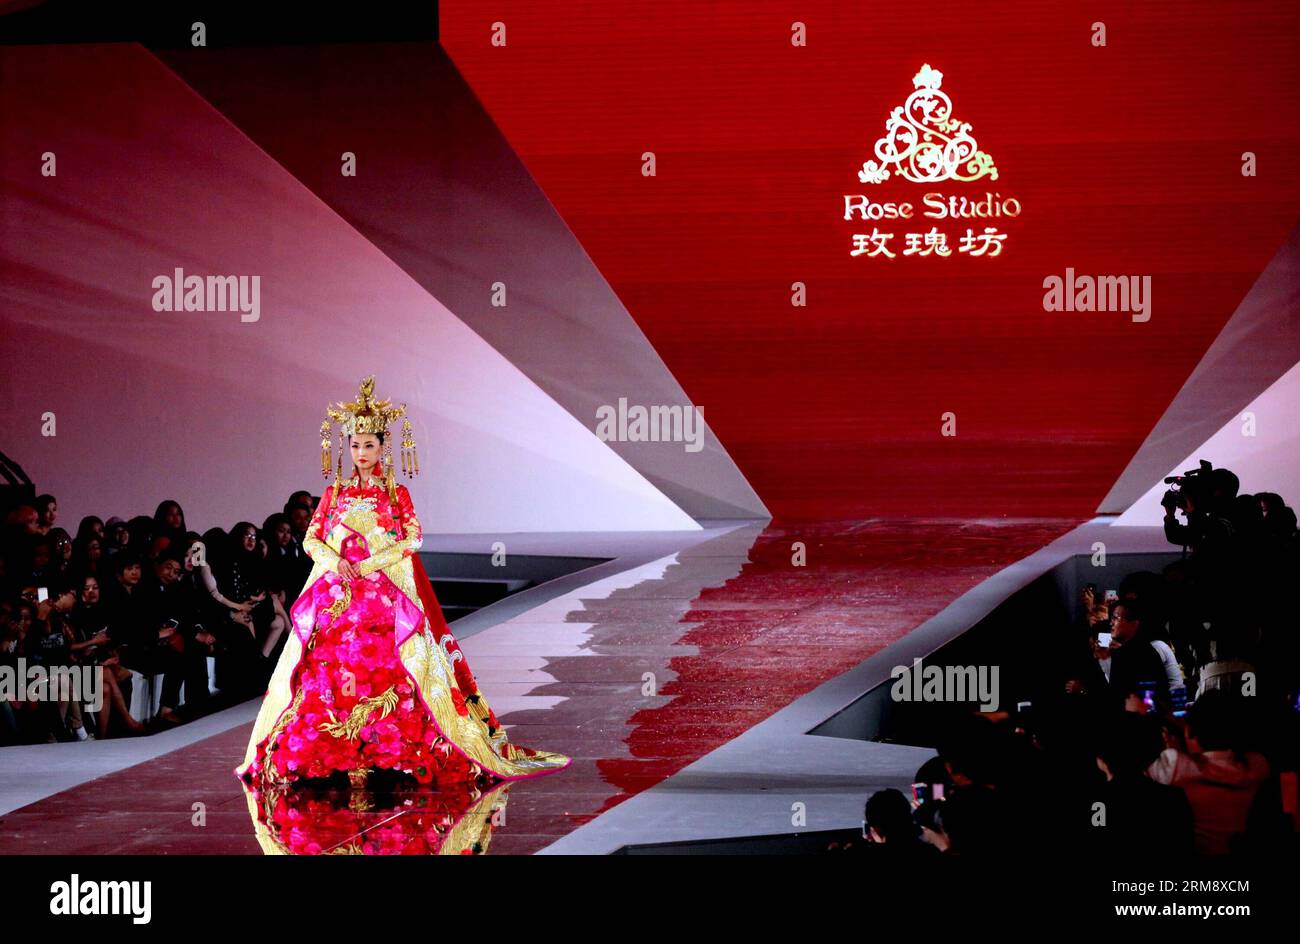 BEIJING, 28 avril 2014 (Xinhua) -- Un mannequin présente une création conçue par Guo Pei, un créateur de mode lauréat des prix de China Fashion Meritorious People, lors de la cérémonie de remise des prix de China Fashion Meritorious People à Shanghai, dans l'est de la Chine, le 28 avril 2014. (Xinhua/Zhuang Yi) (lfj) CHINA-SHANGHAI-FASHION SHOW(CN) PUBLICATIONxNOTxINxCHN Beijing avril 28 2014 XINHUA a Model présente une création conçue par Guo Pei a Fashion Designers remportant les prix des célébrités méritoires de la mode chinoise lors de la cérémonie de remise de prix des célébrités méritoires de la mode chinoise à Shanghai East China en avril Banque D'Images